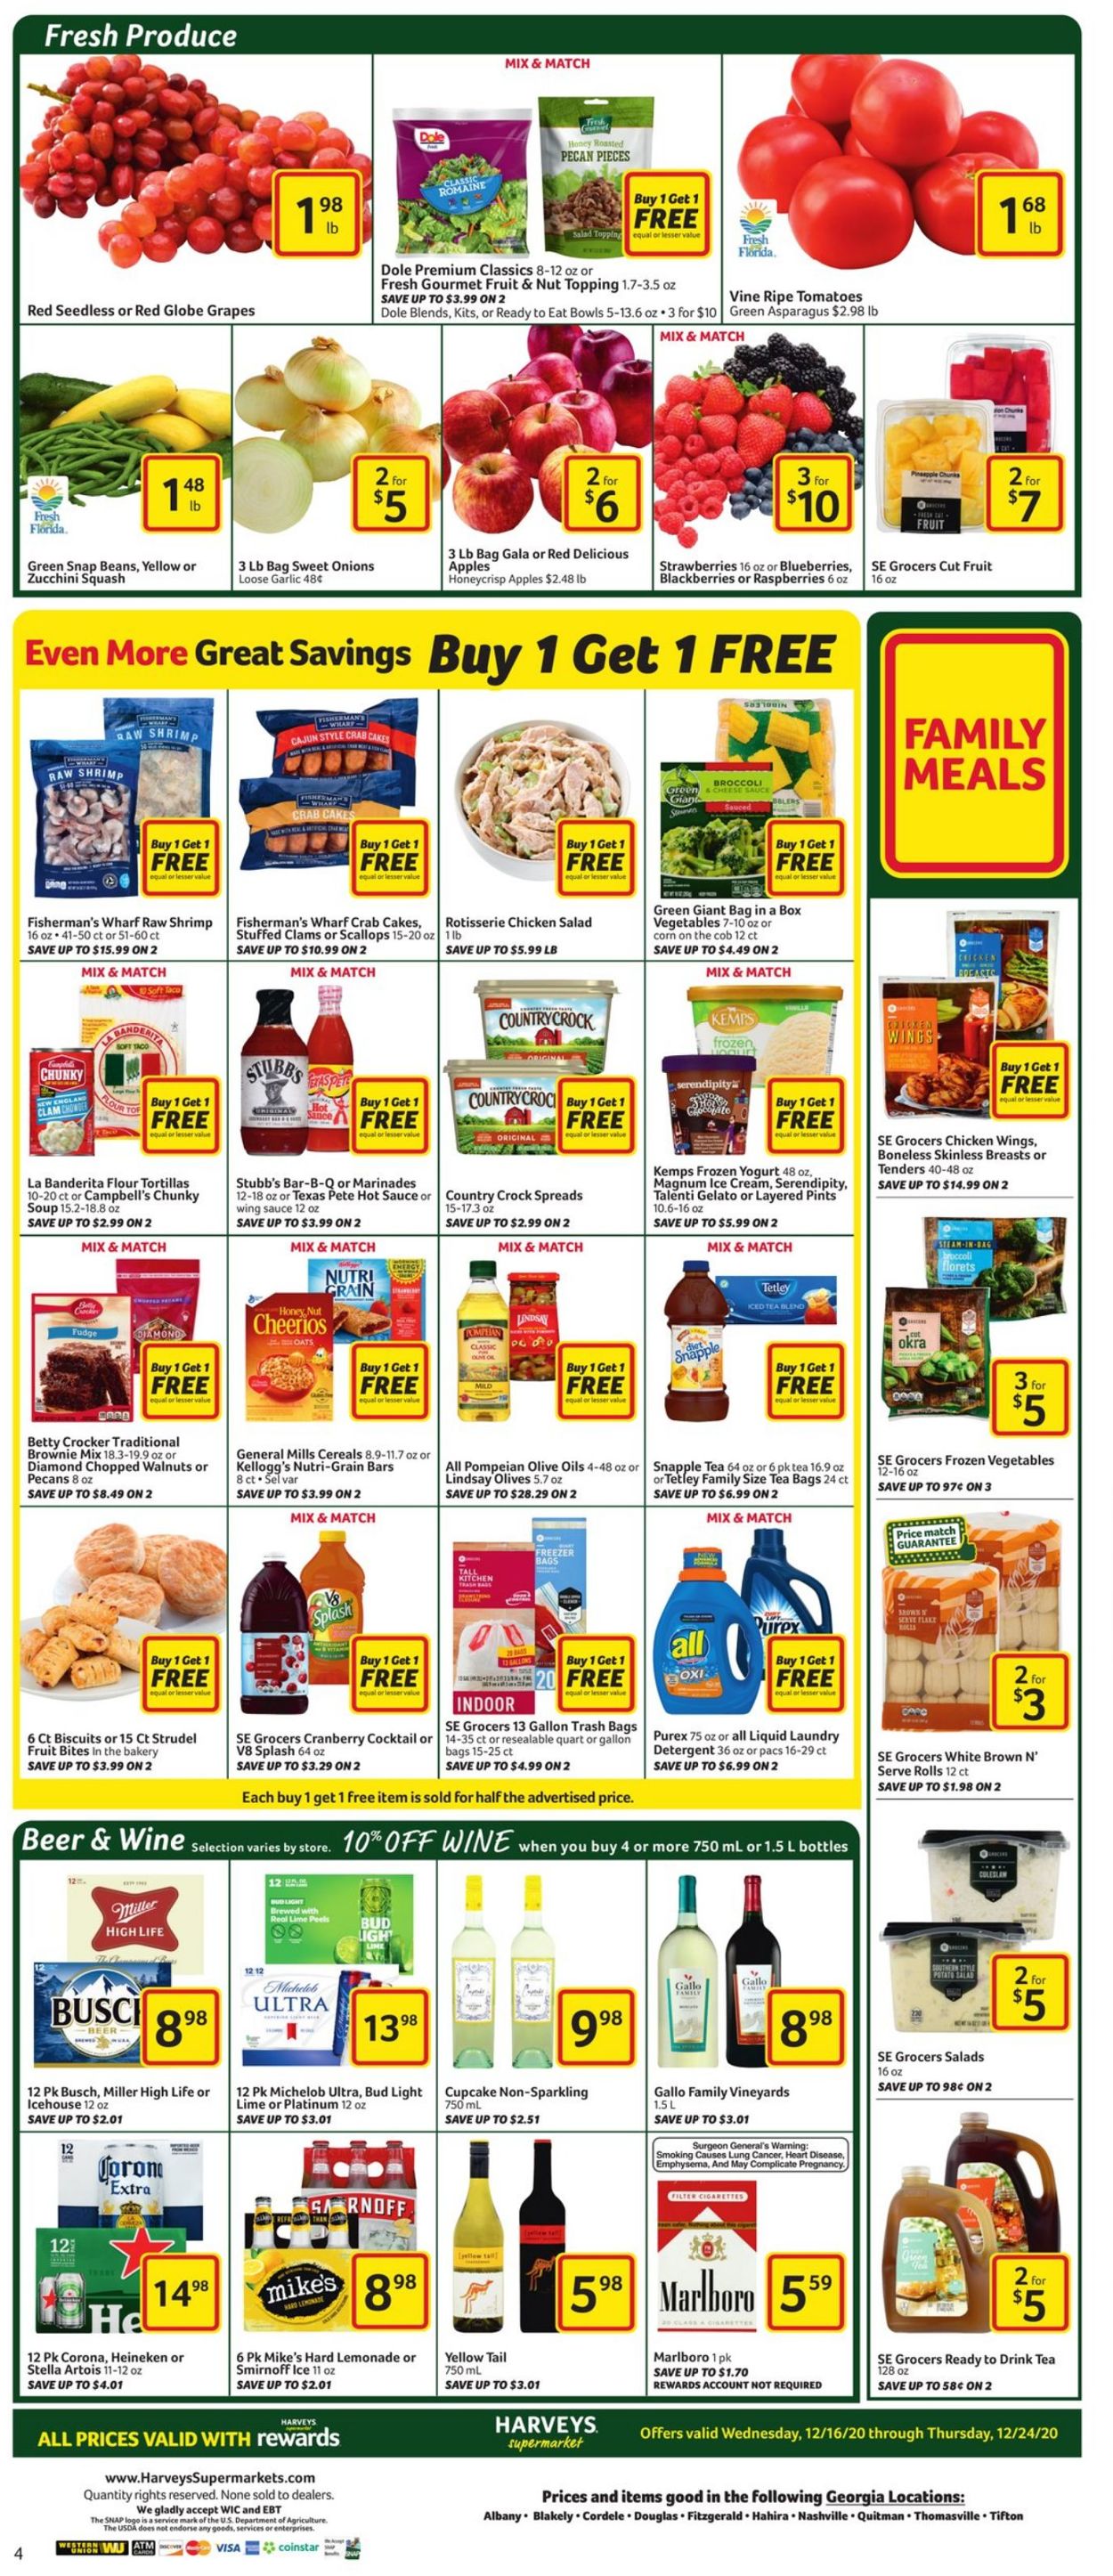 Harveys Supermarket Ad from 12/16/2020